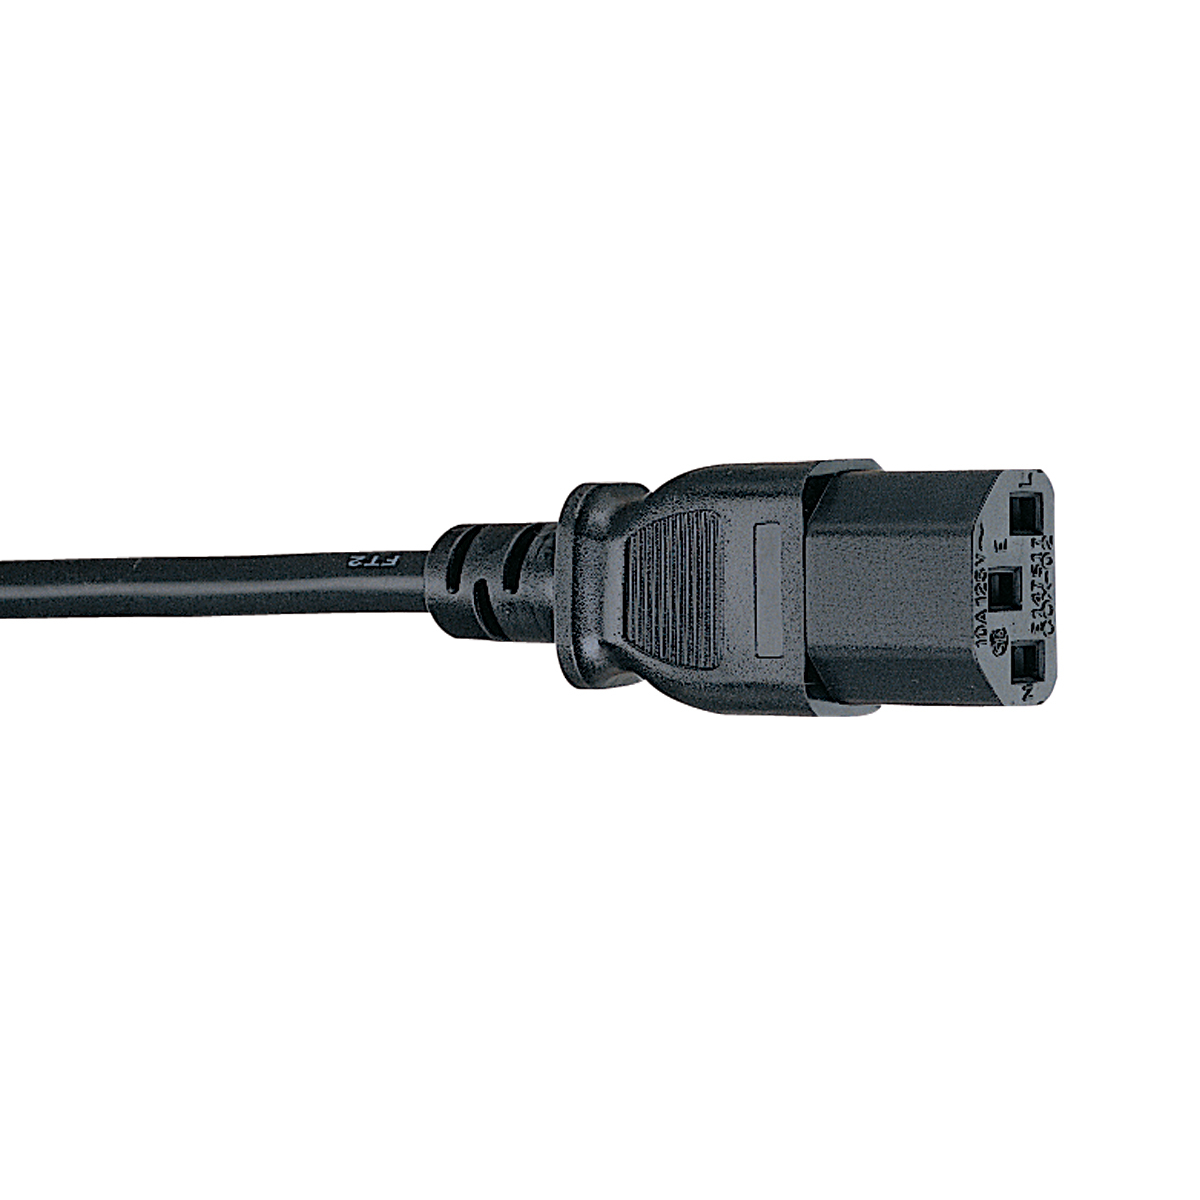 Cable De Poder Tripp Lite C14 Coupler A C13 Coupler 1.83M P004-006-13A